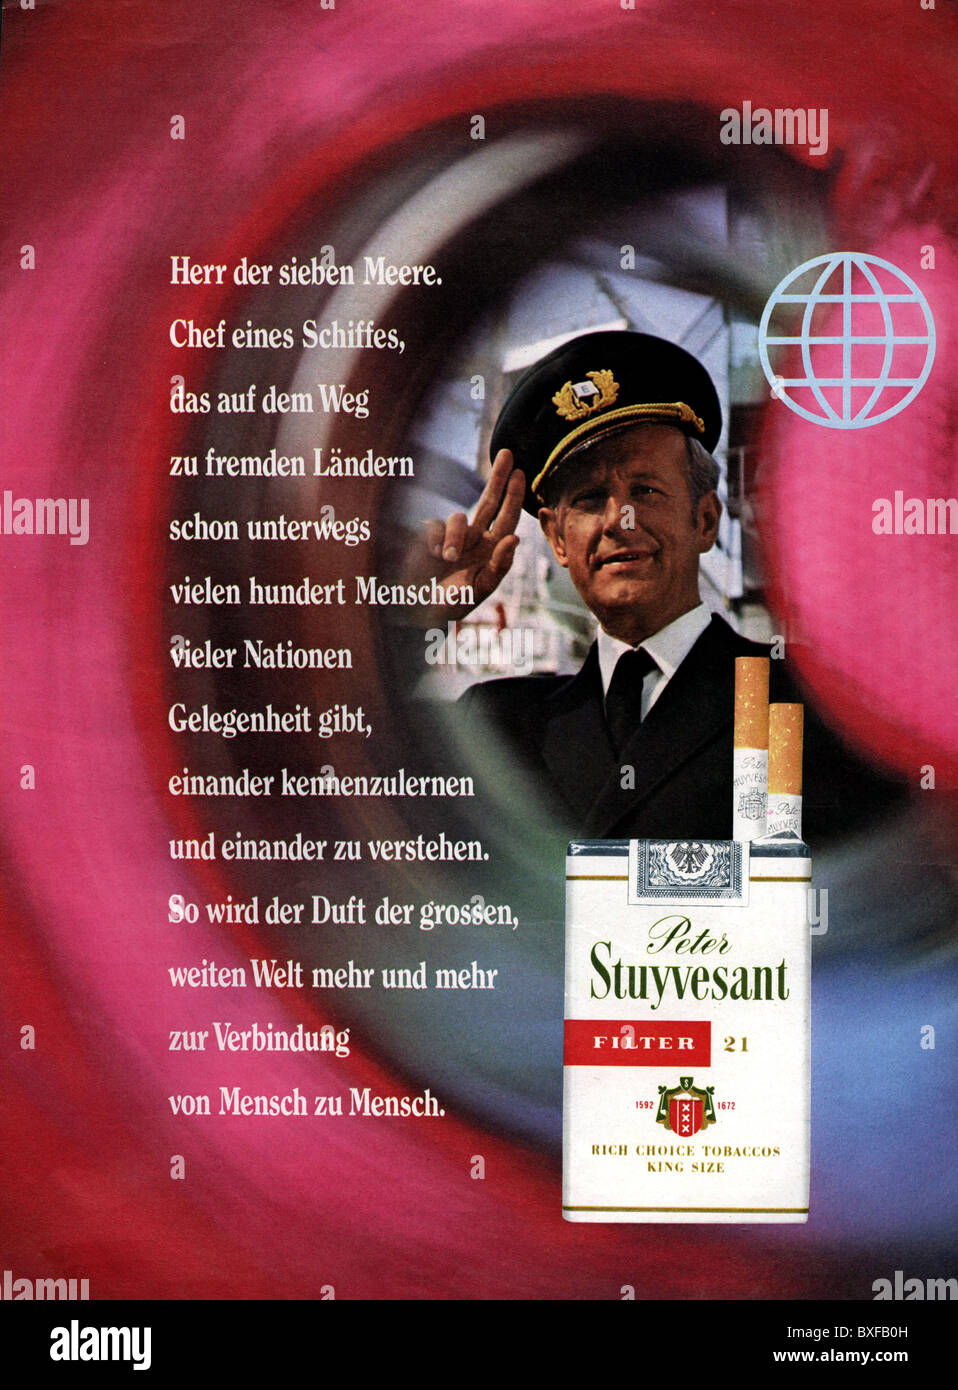 Pubblicità, tabacco, sigarette, pubblicità per le sigarette filtro Peter Stuyvesant, da una rivista, Germania, circa 1970, diritti aggiuntivi-clearences-non disponibile Foto Stock